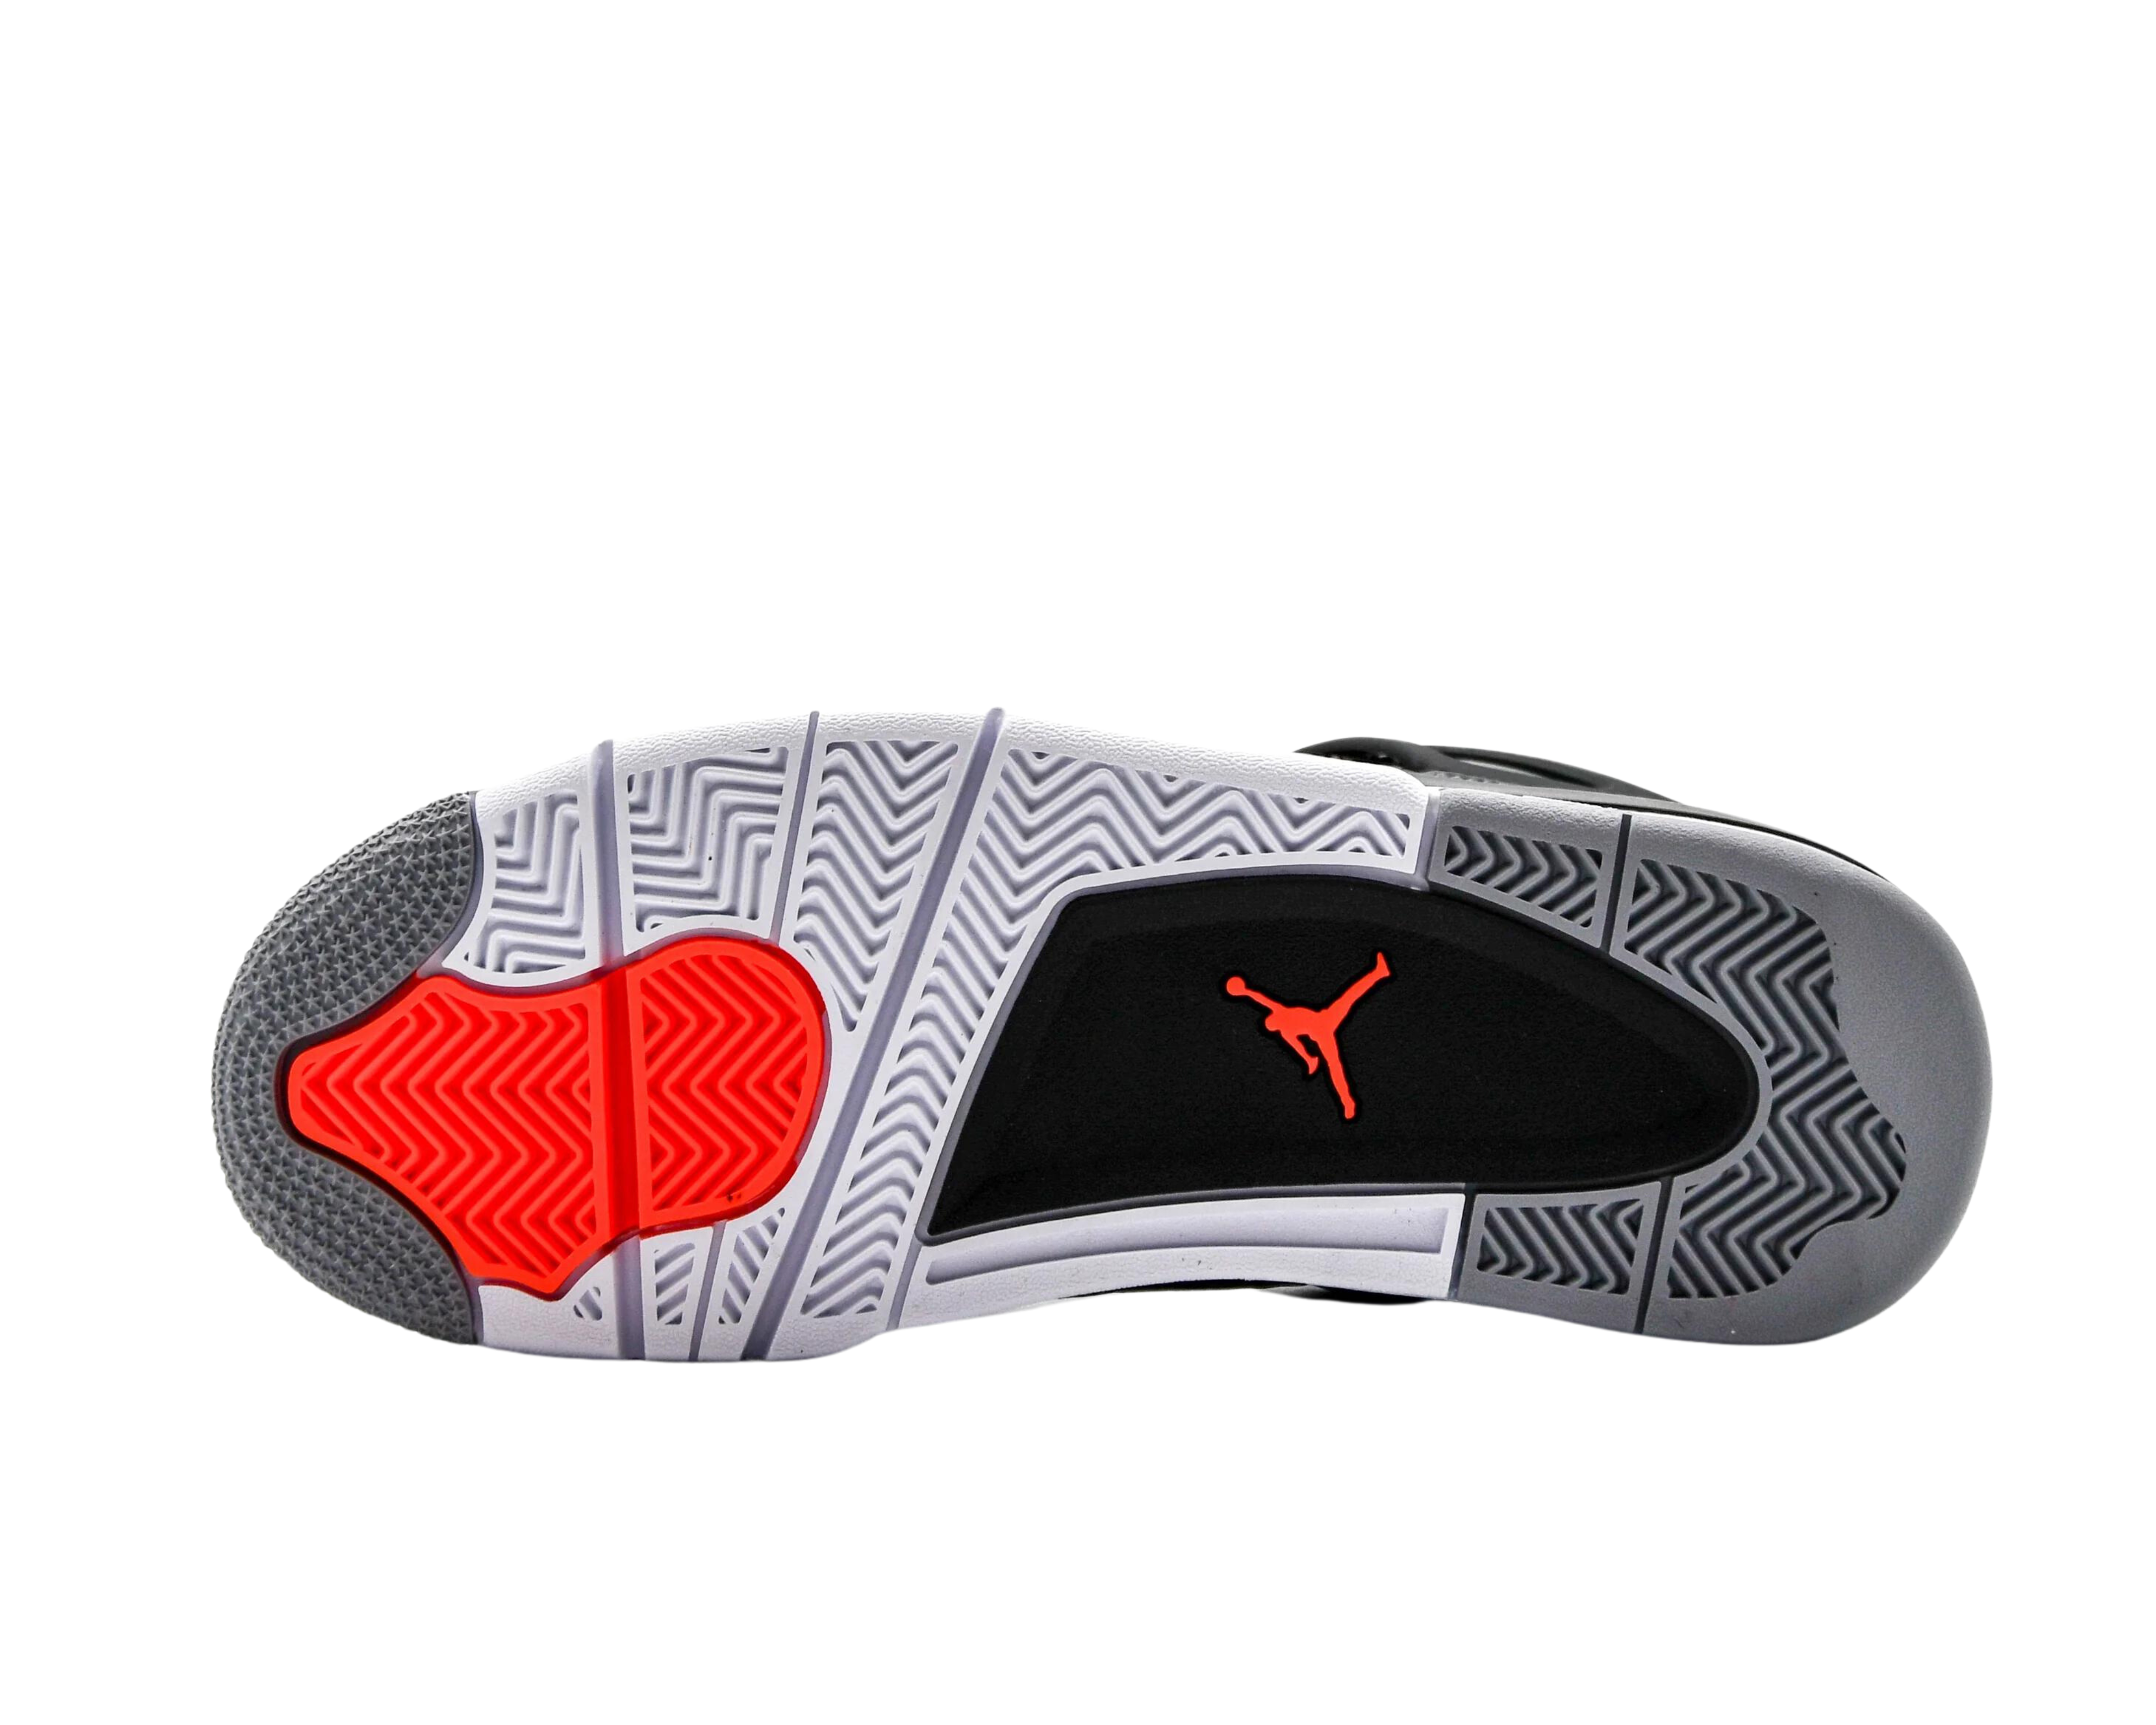 Air Jordan 4 Retro “Infrared”